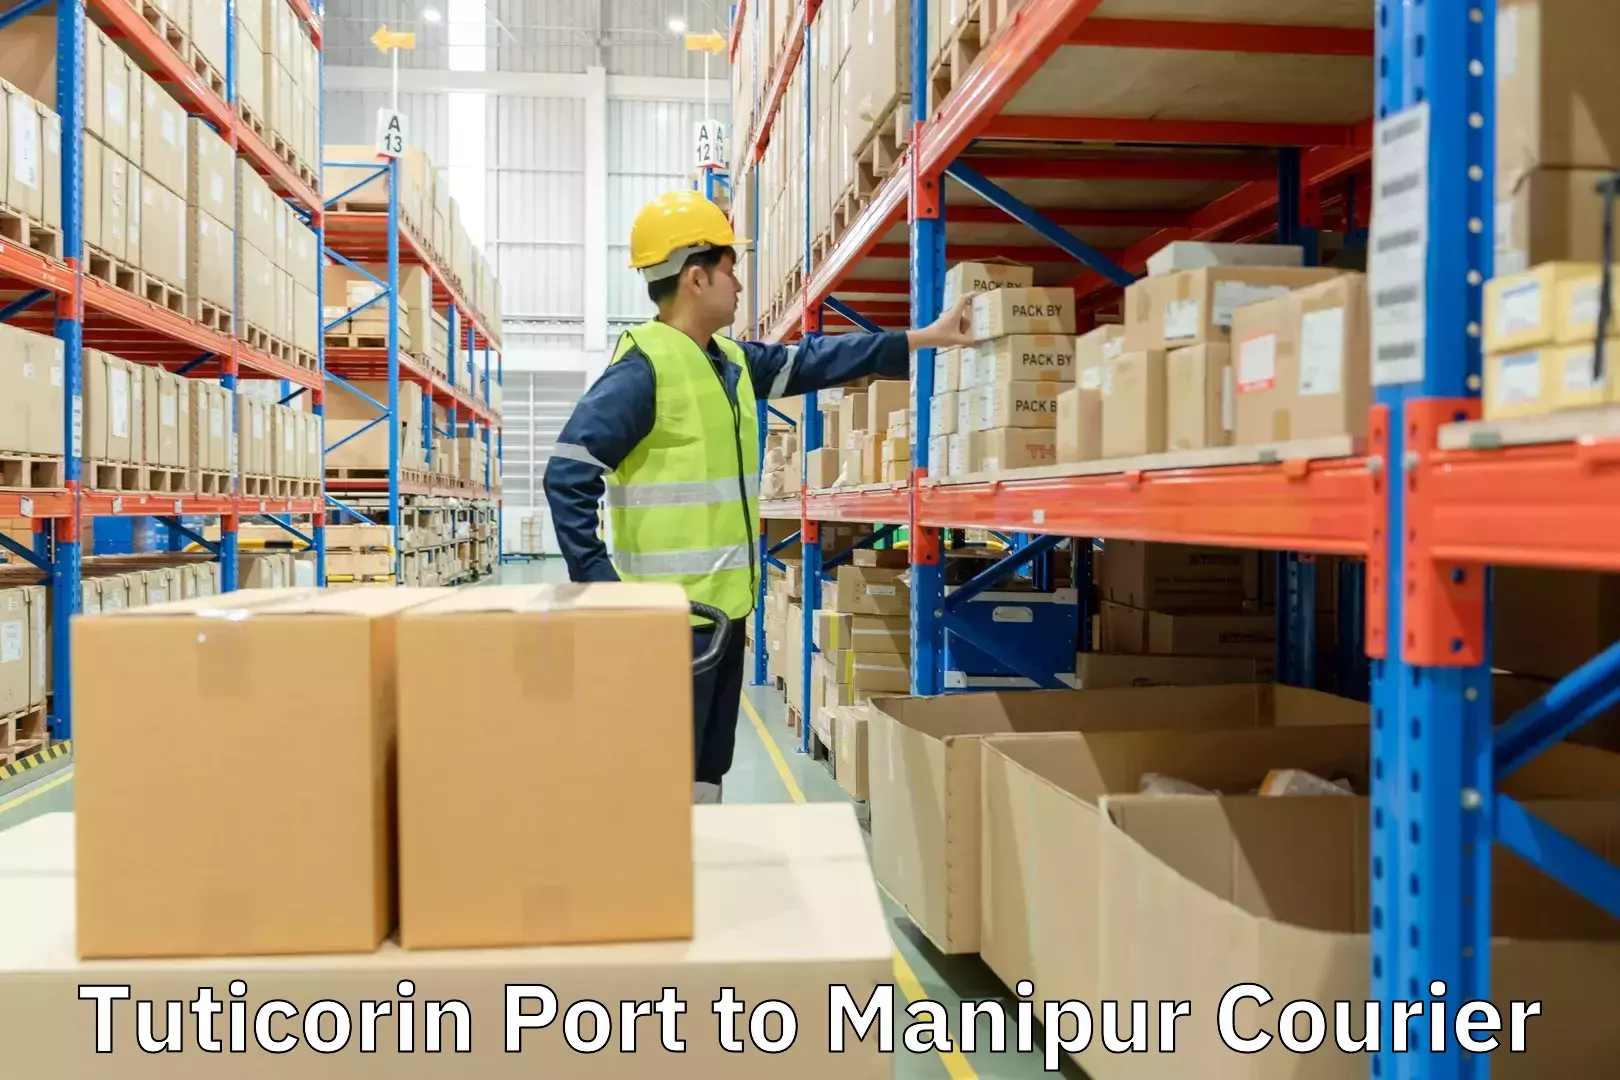 Premium delivery services Tuticorin Port to Chandel